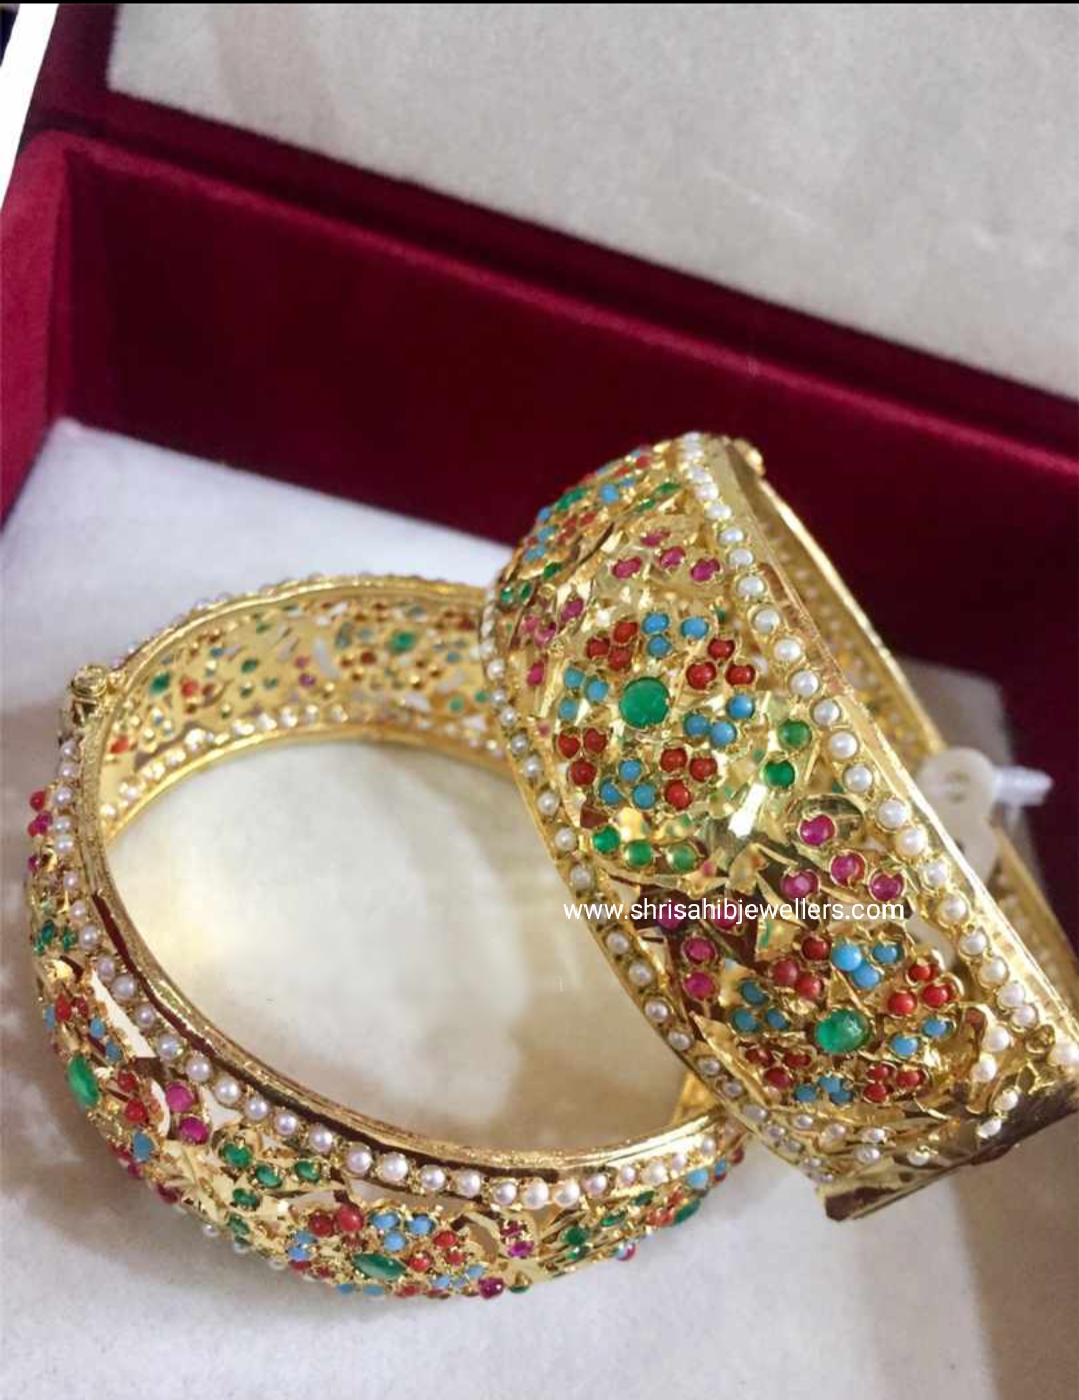 22ct Gold Finishing Products Of Hyderabad Jadau Kade/Bangle - Jadau ...